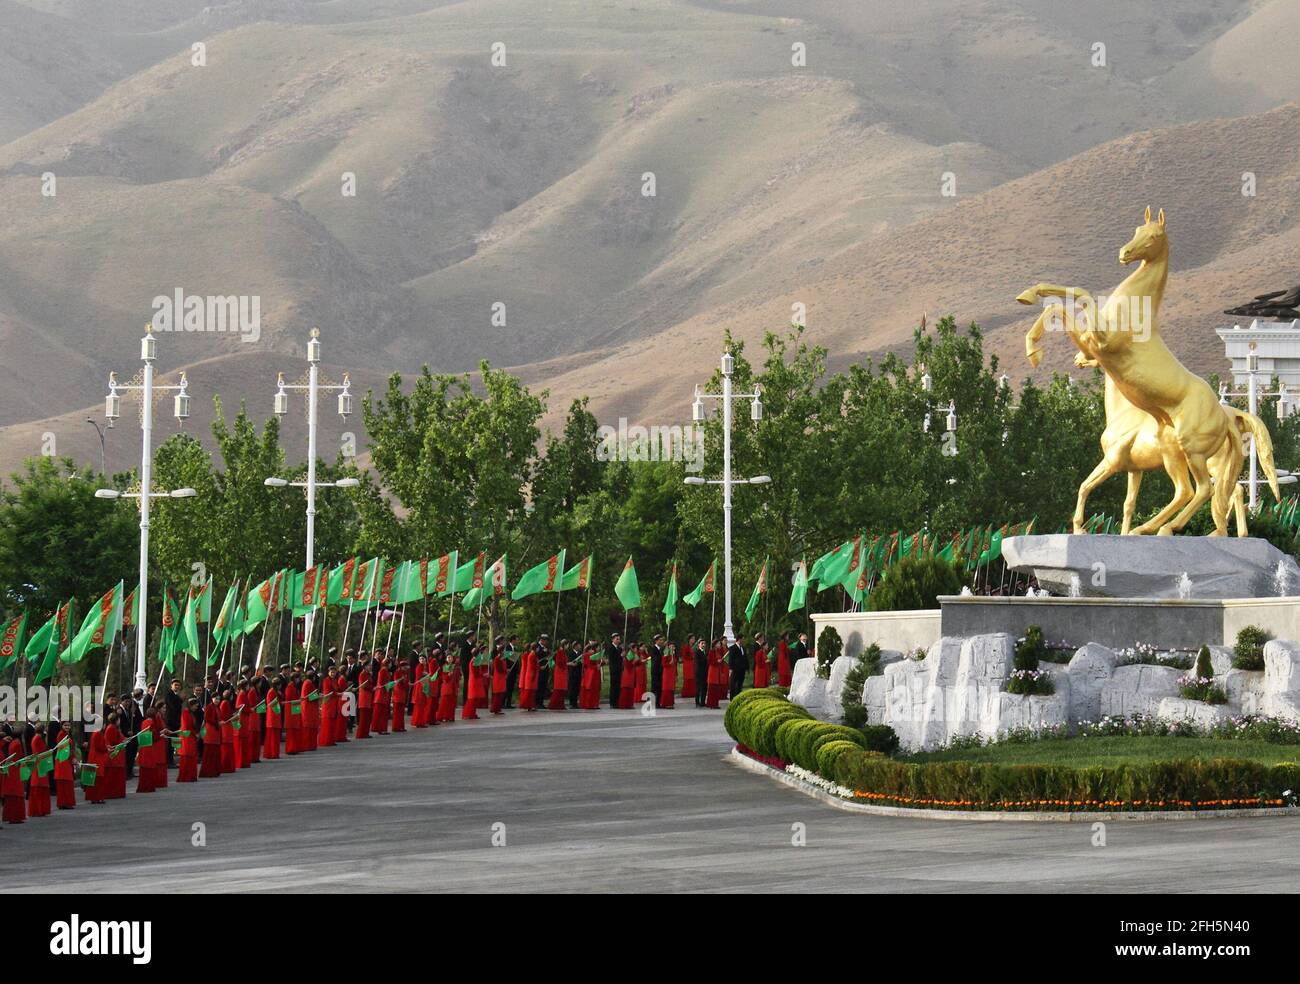 Künstler treten während der Feierlichkeiten zum nationalen Turkmenischen Pferdetag und zum turkmenischen Schäferhundentag in der Nähe von Aschgabat, Turkmenistan, am 25. April 2021 auf. REUTERS/Vyacheslav Sarkisyan Stockfoto